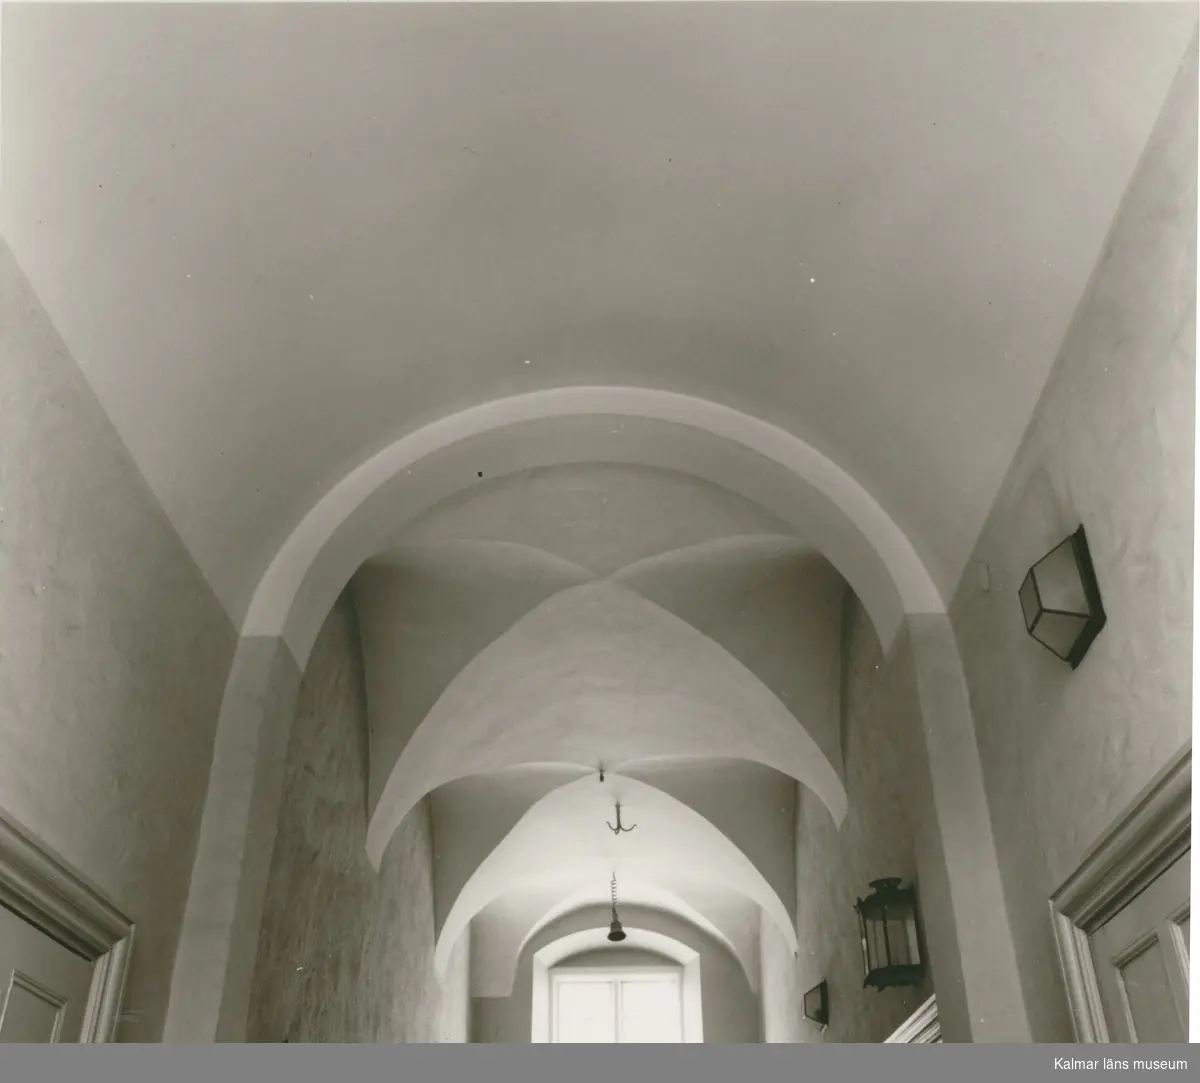 Övre våningens kryssvalv i korridoren på Kalmar rådhus.